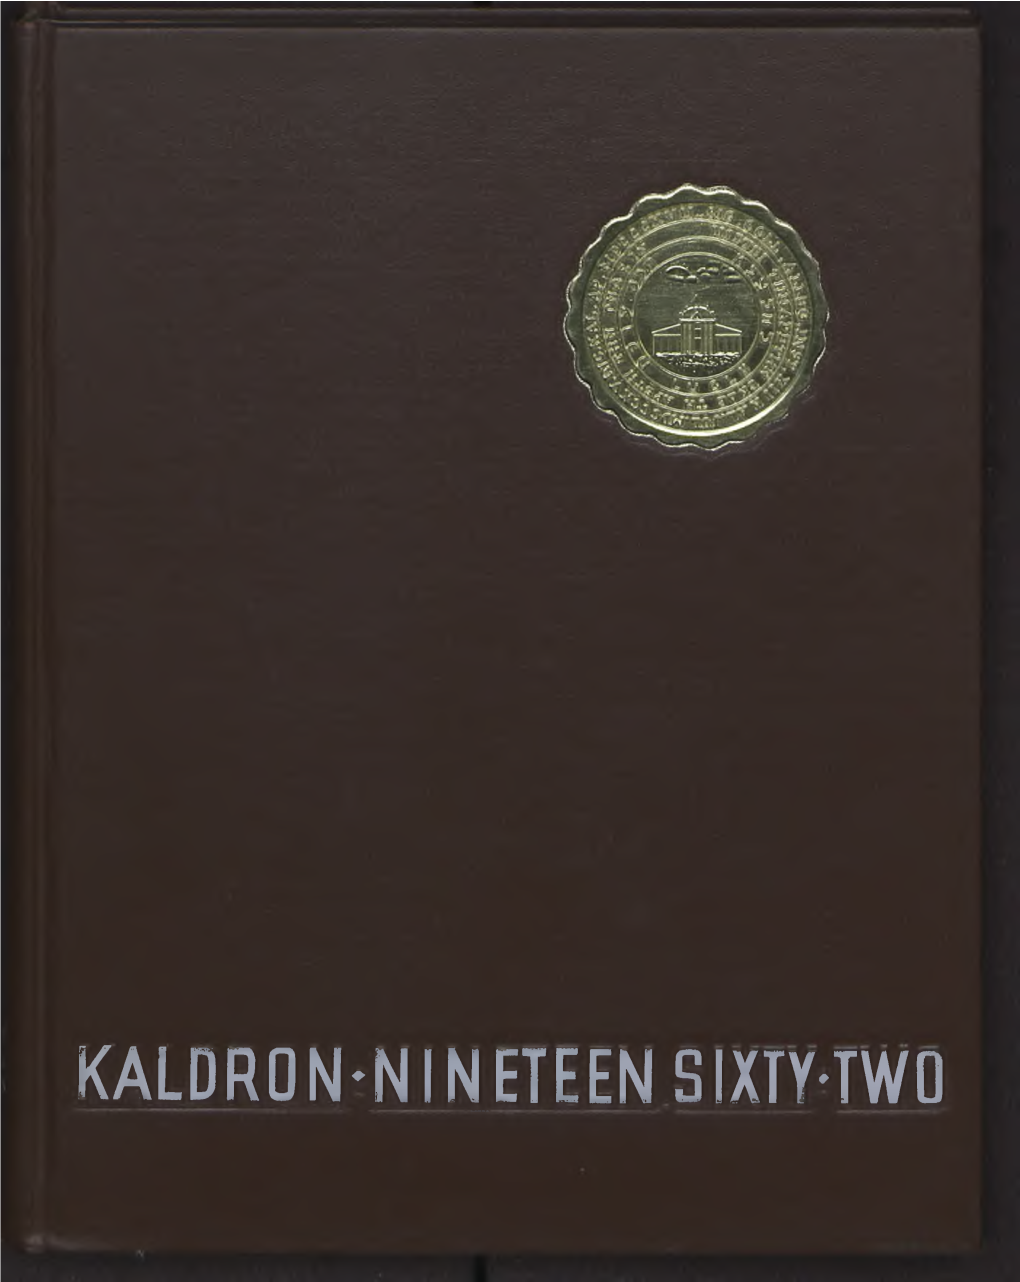 Kaldron-Nineteen Sixty-Two